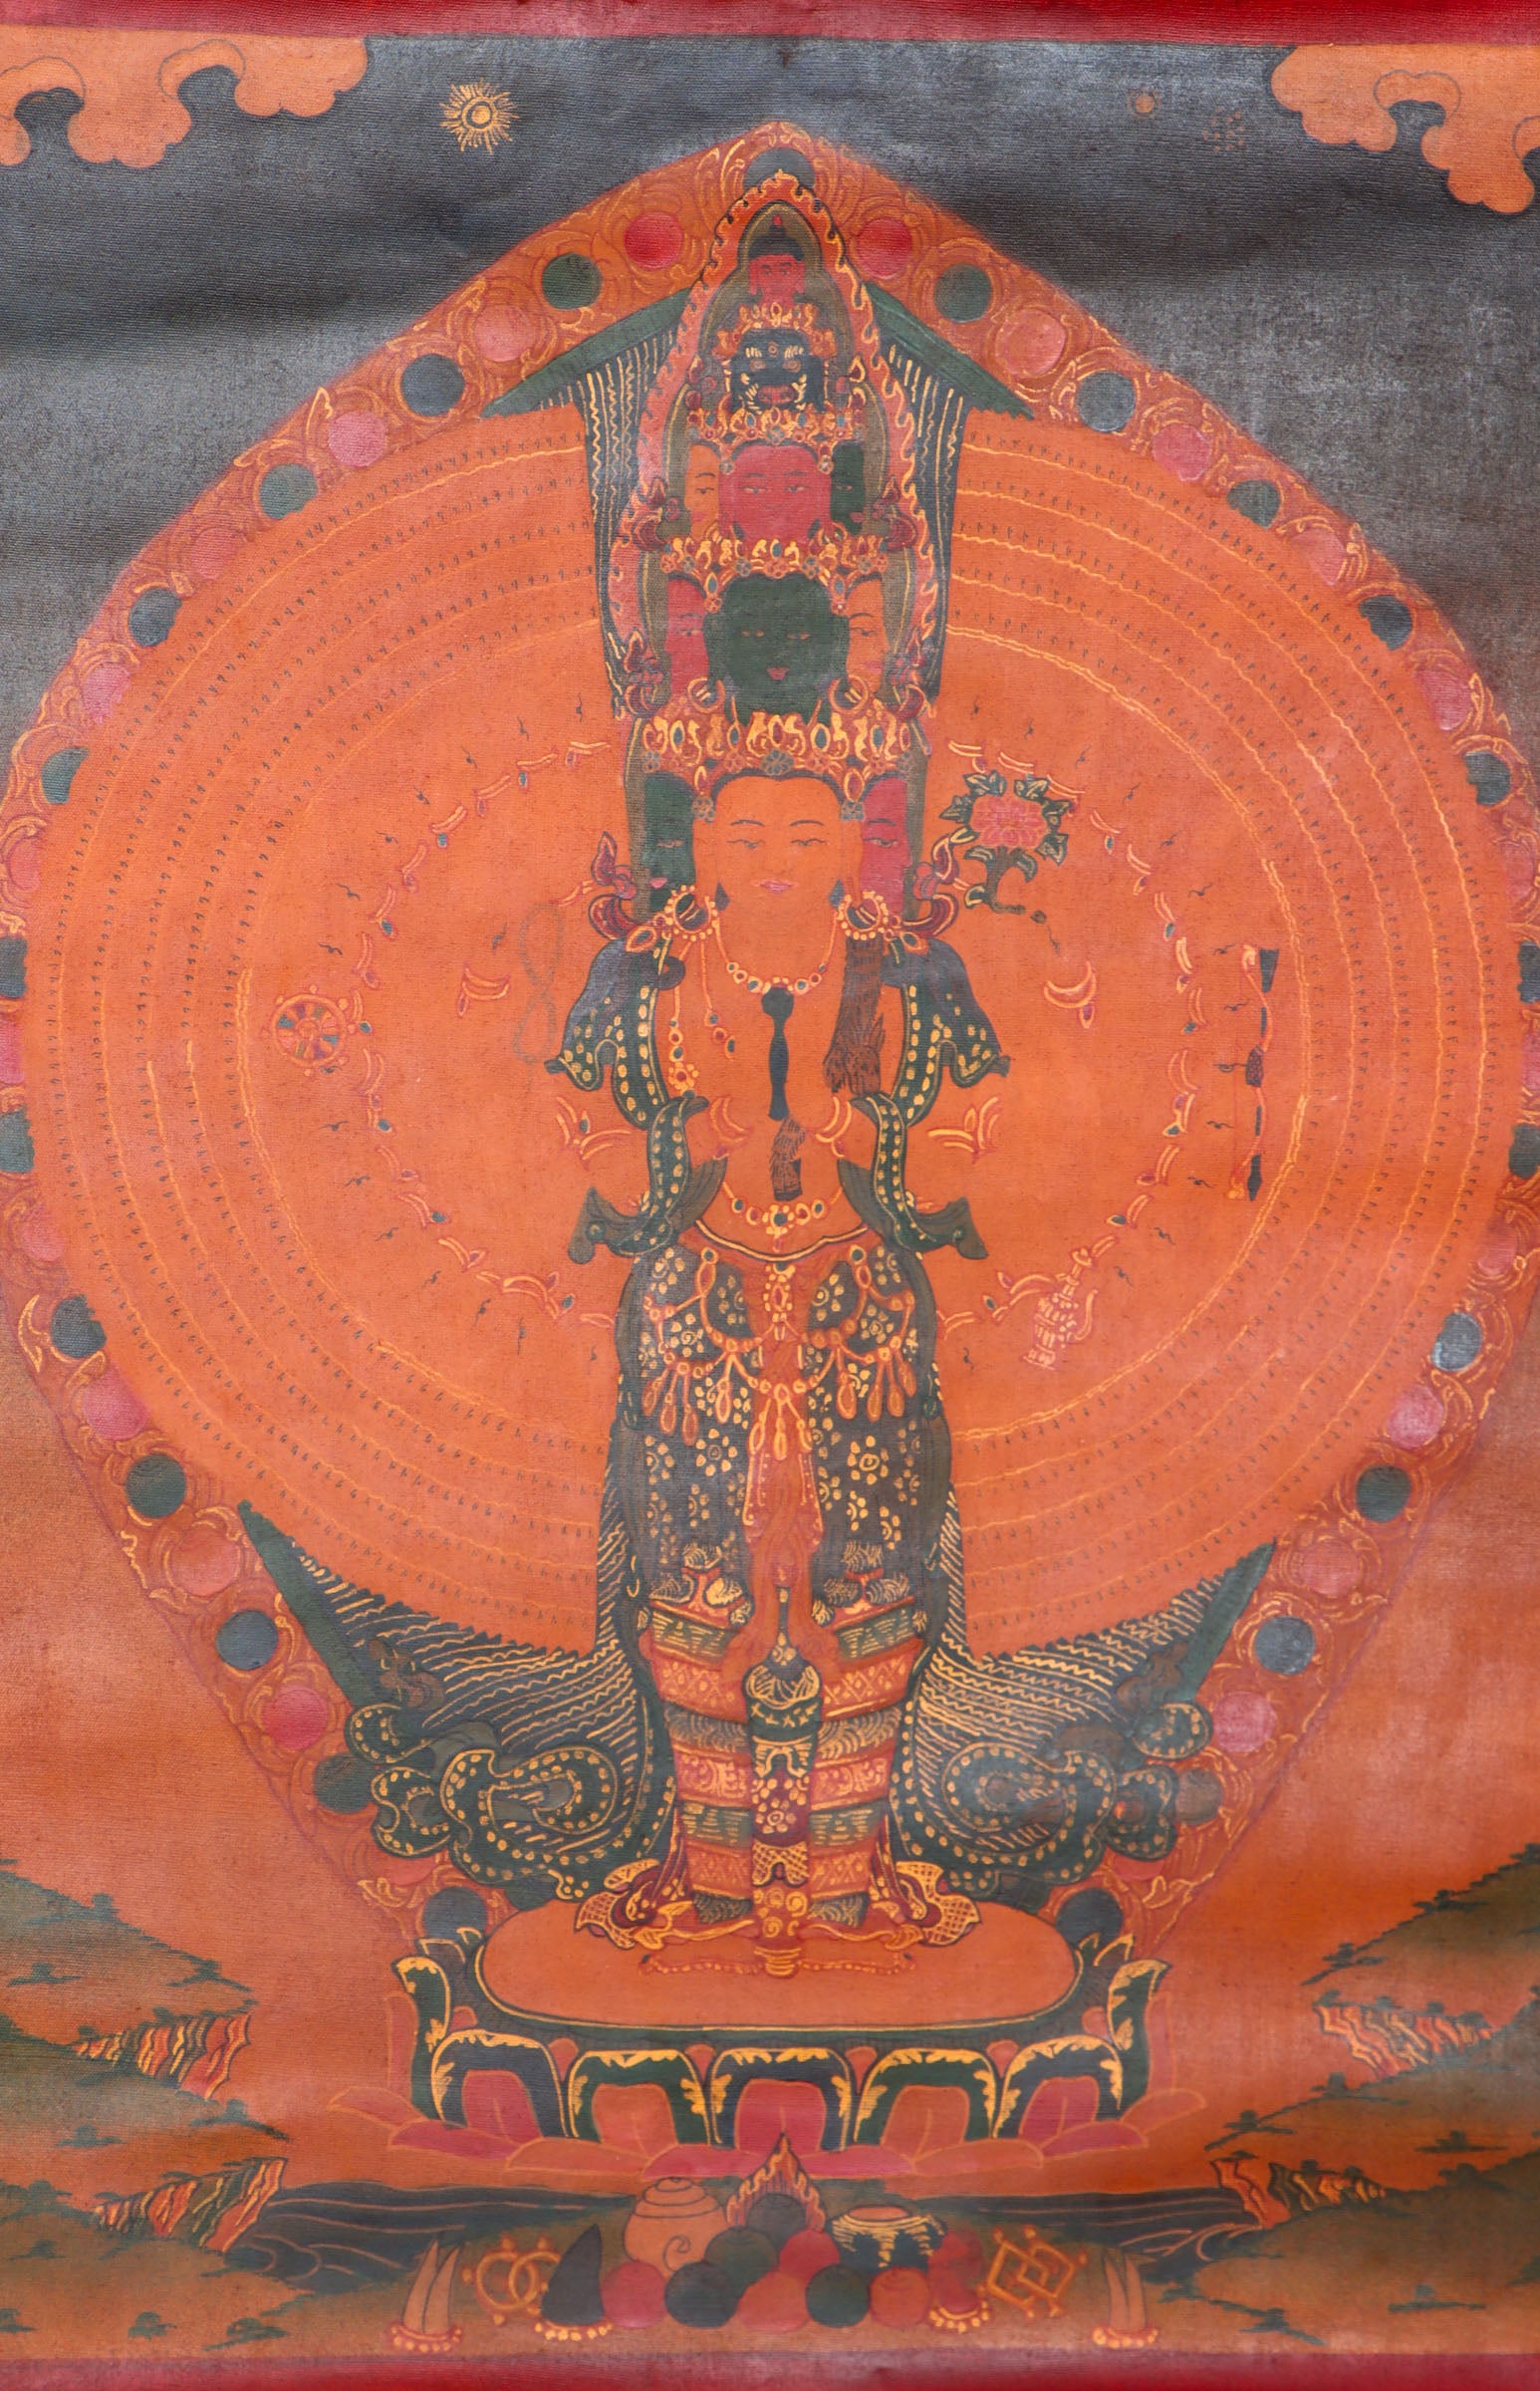  Antique Lokeshwor Thangka Painting for spiritual teaching.